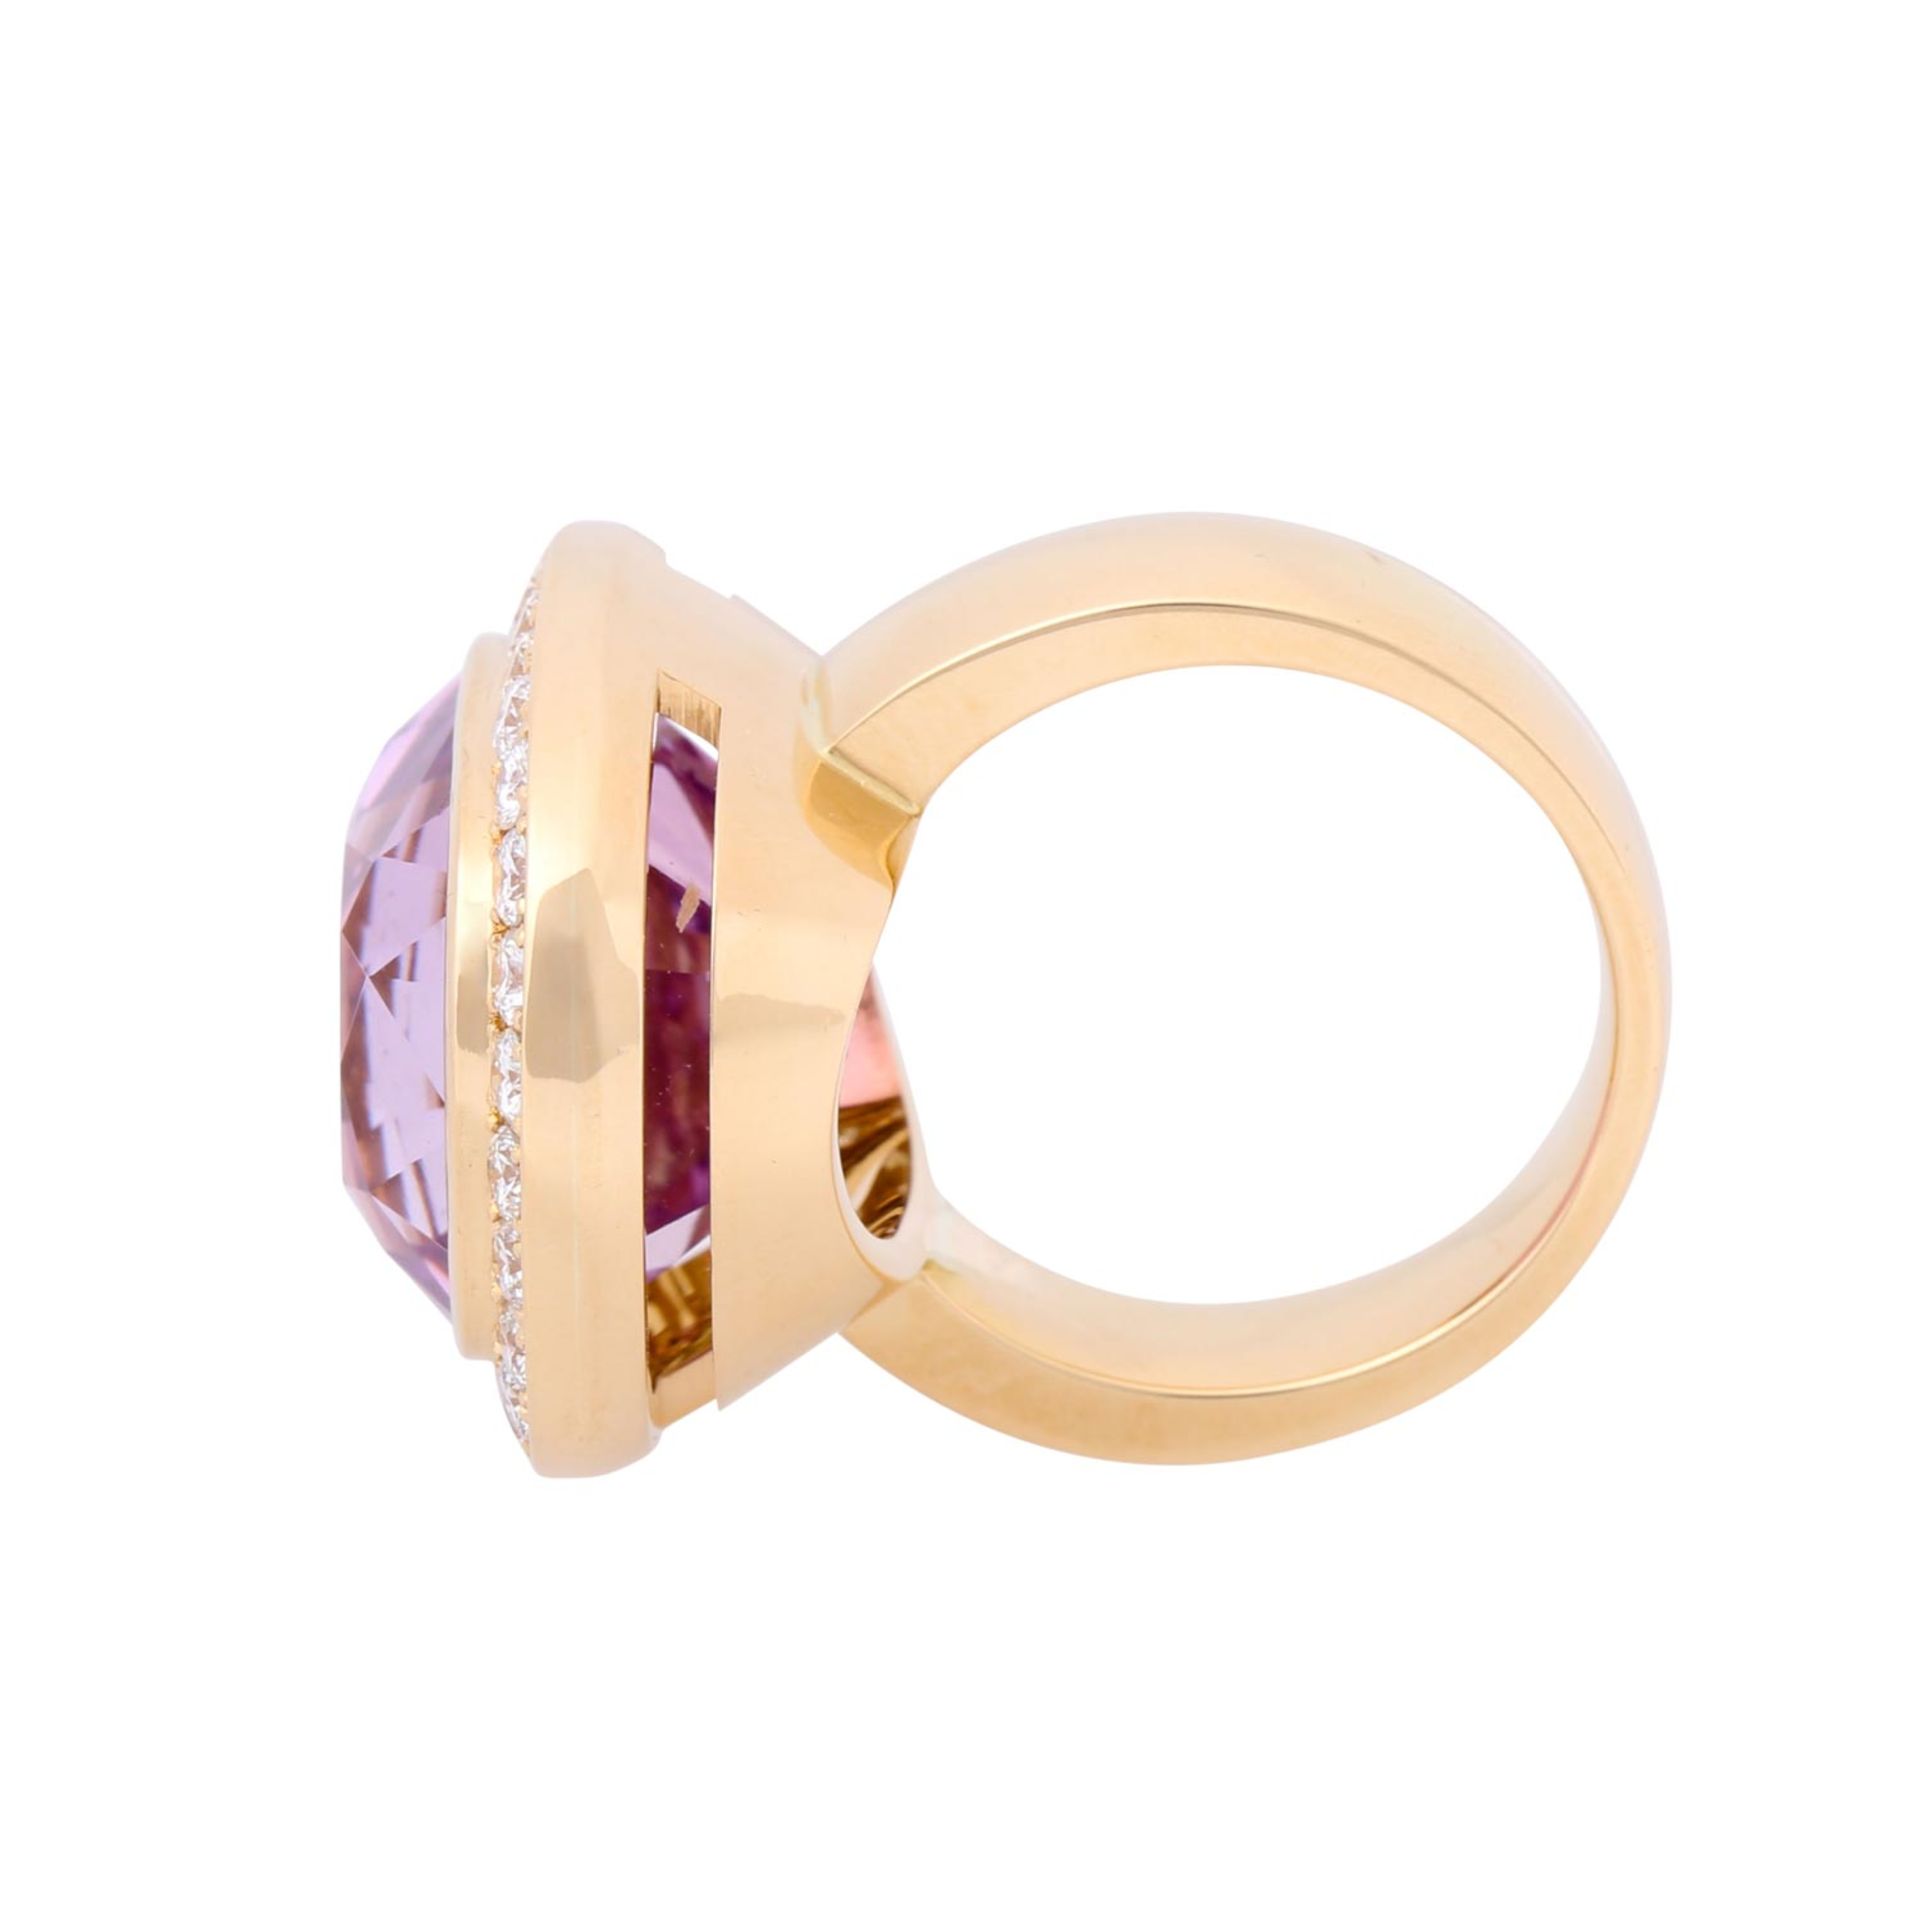 Eleganter Ring mit feinem, pinken afghanischen Kunzit im Kissenschliff von ca. 28 ct, - Image 6 of 6